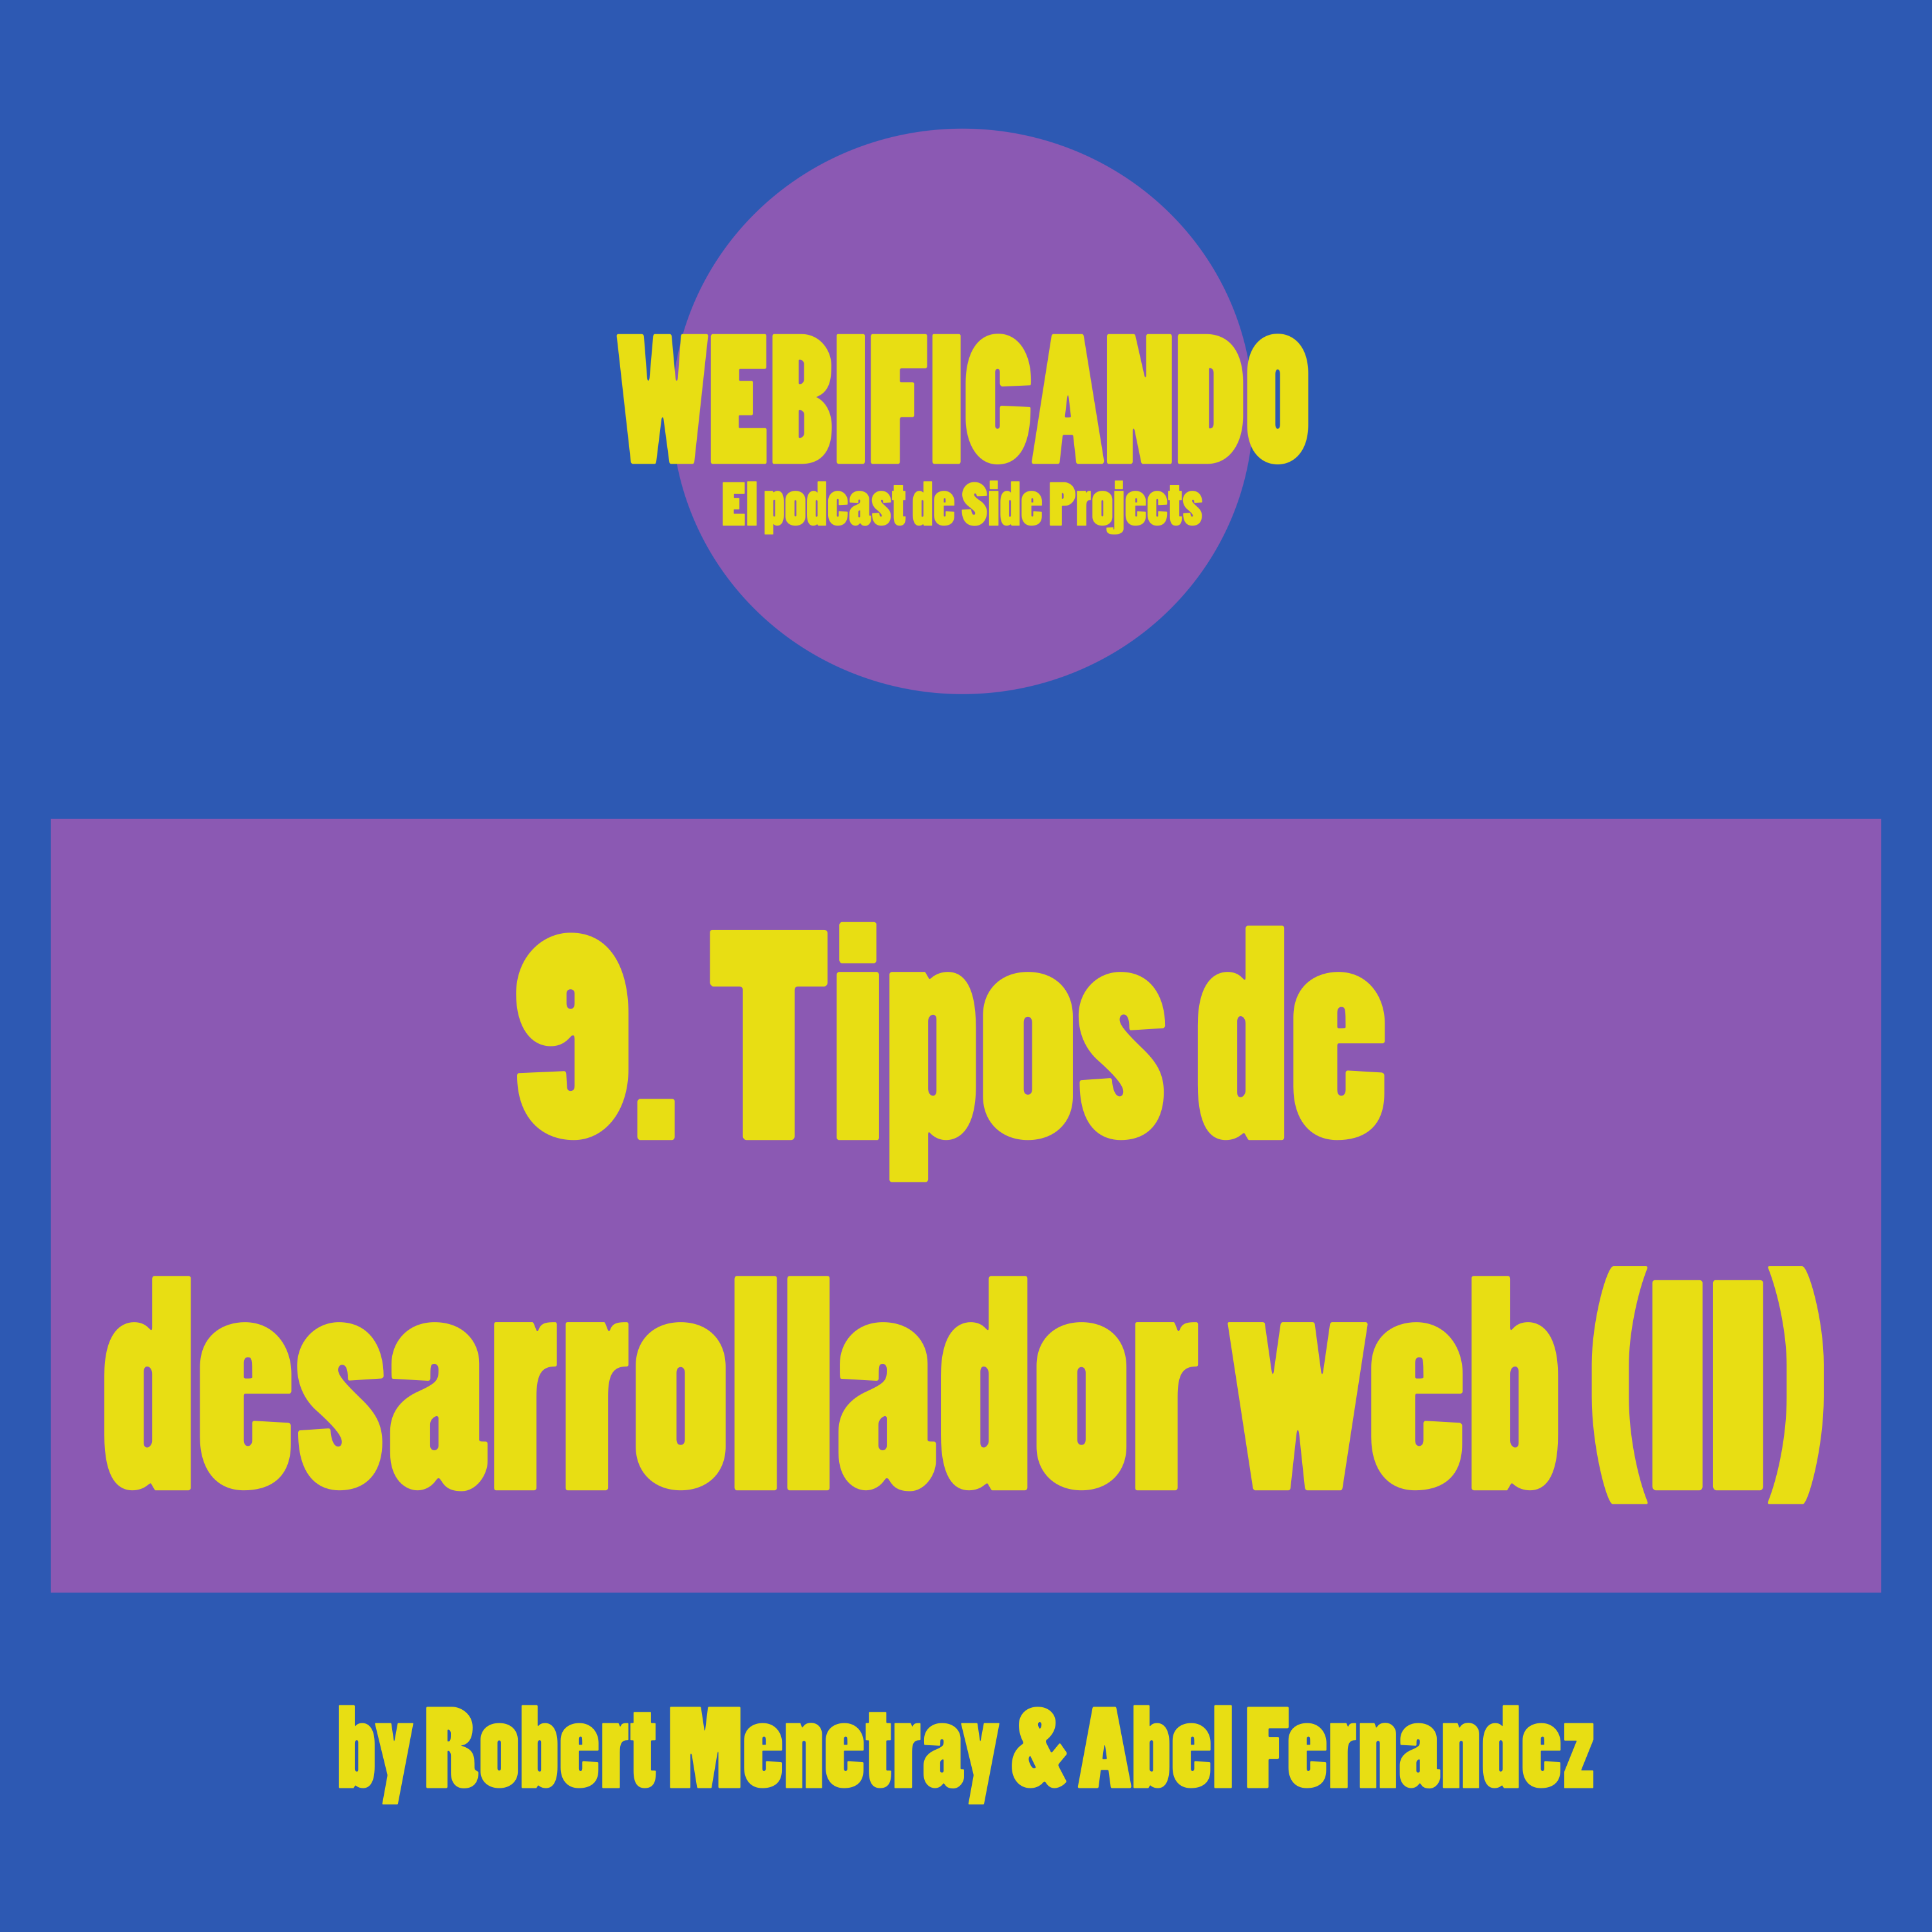 9. Tipos de desarrollador web (II)